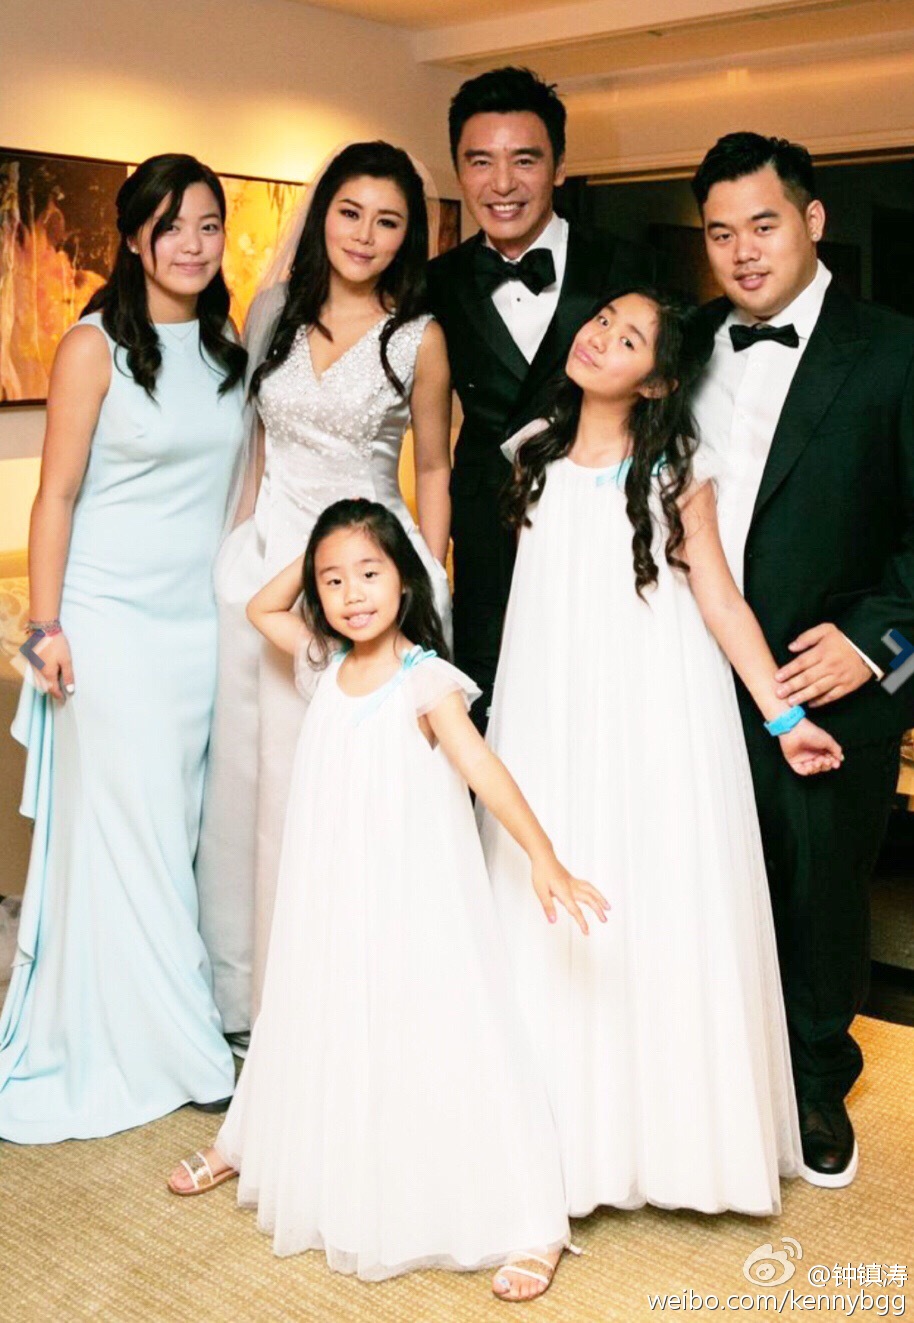 锺镇涛与范姜2014年于峇里举行豪华婚礼时，大女锺嘉晴（后左）都有到场见证。